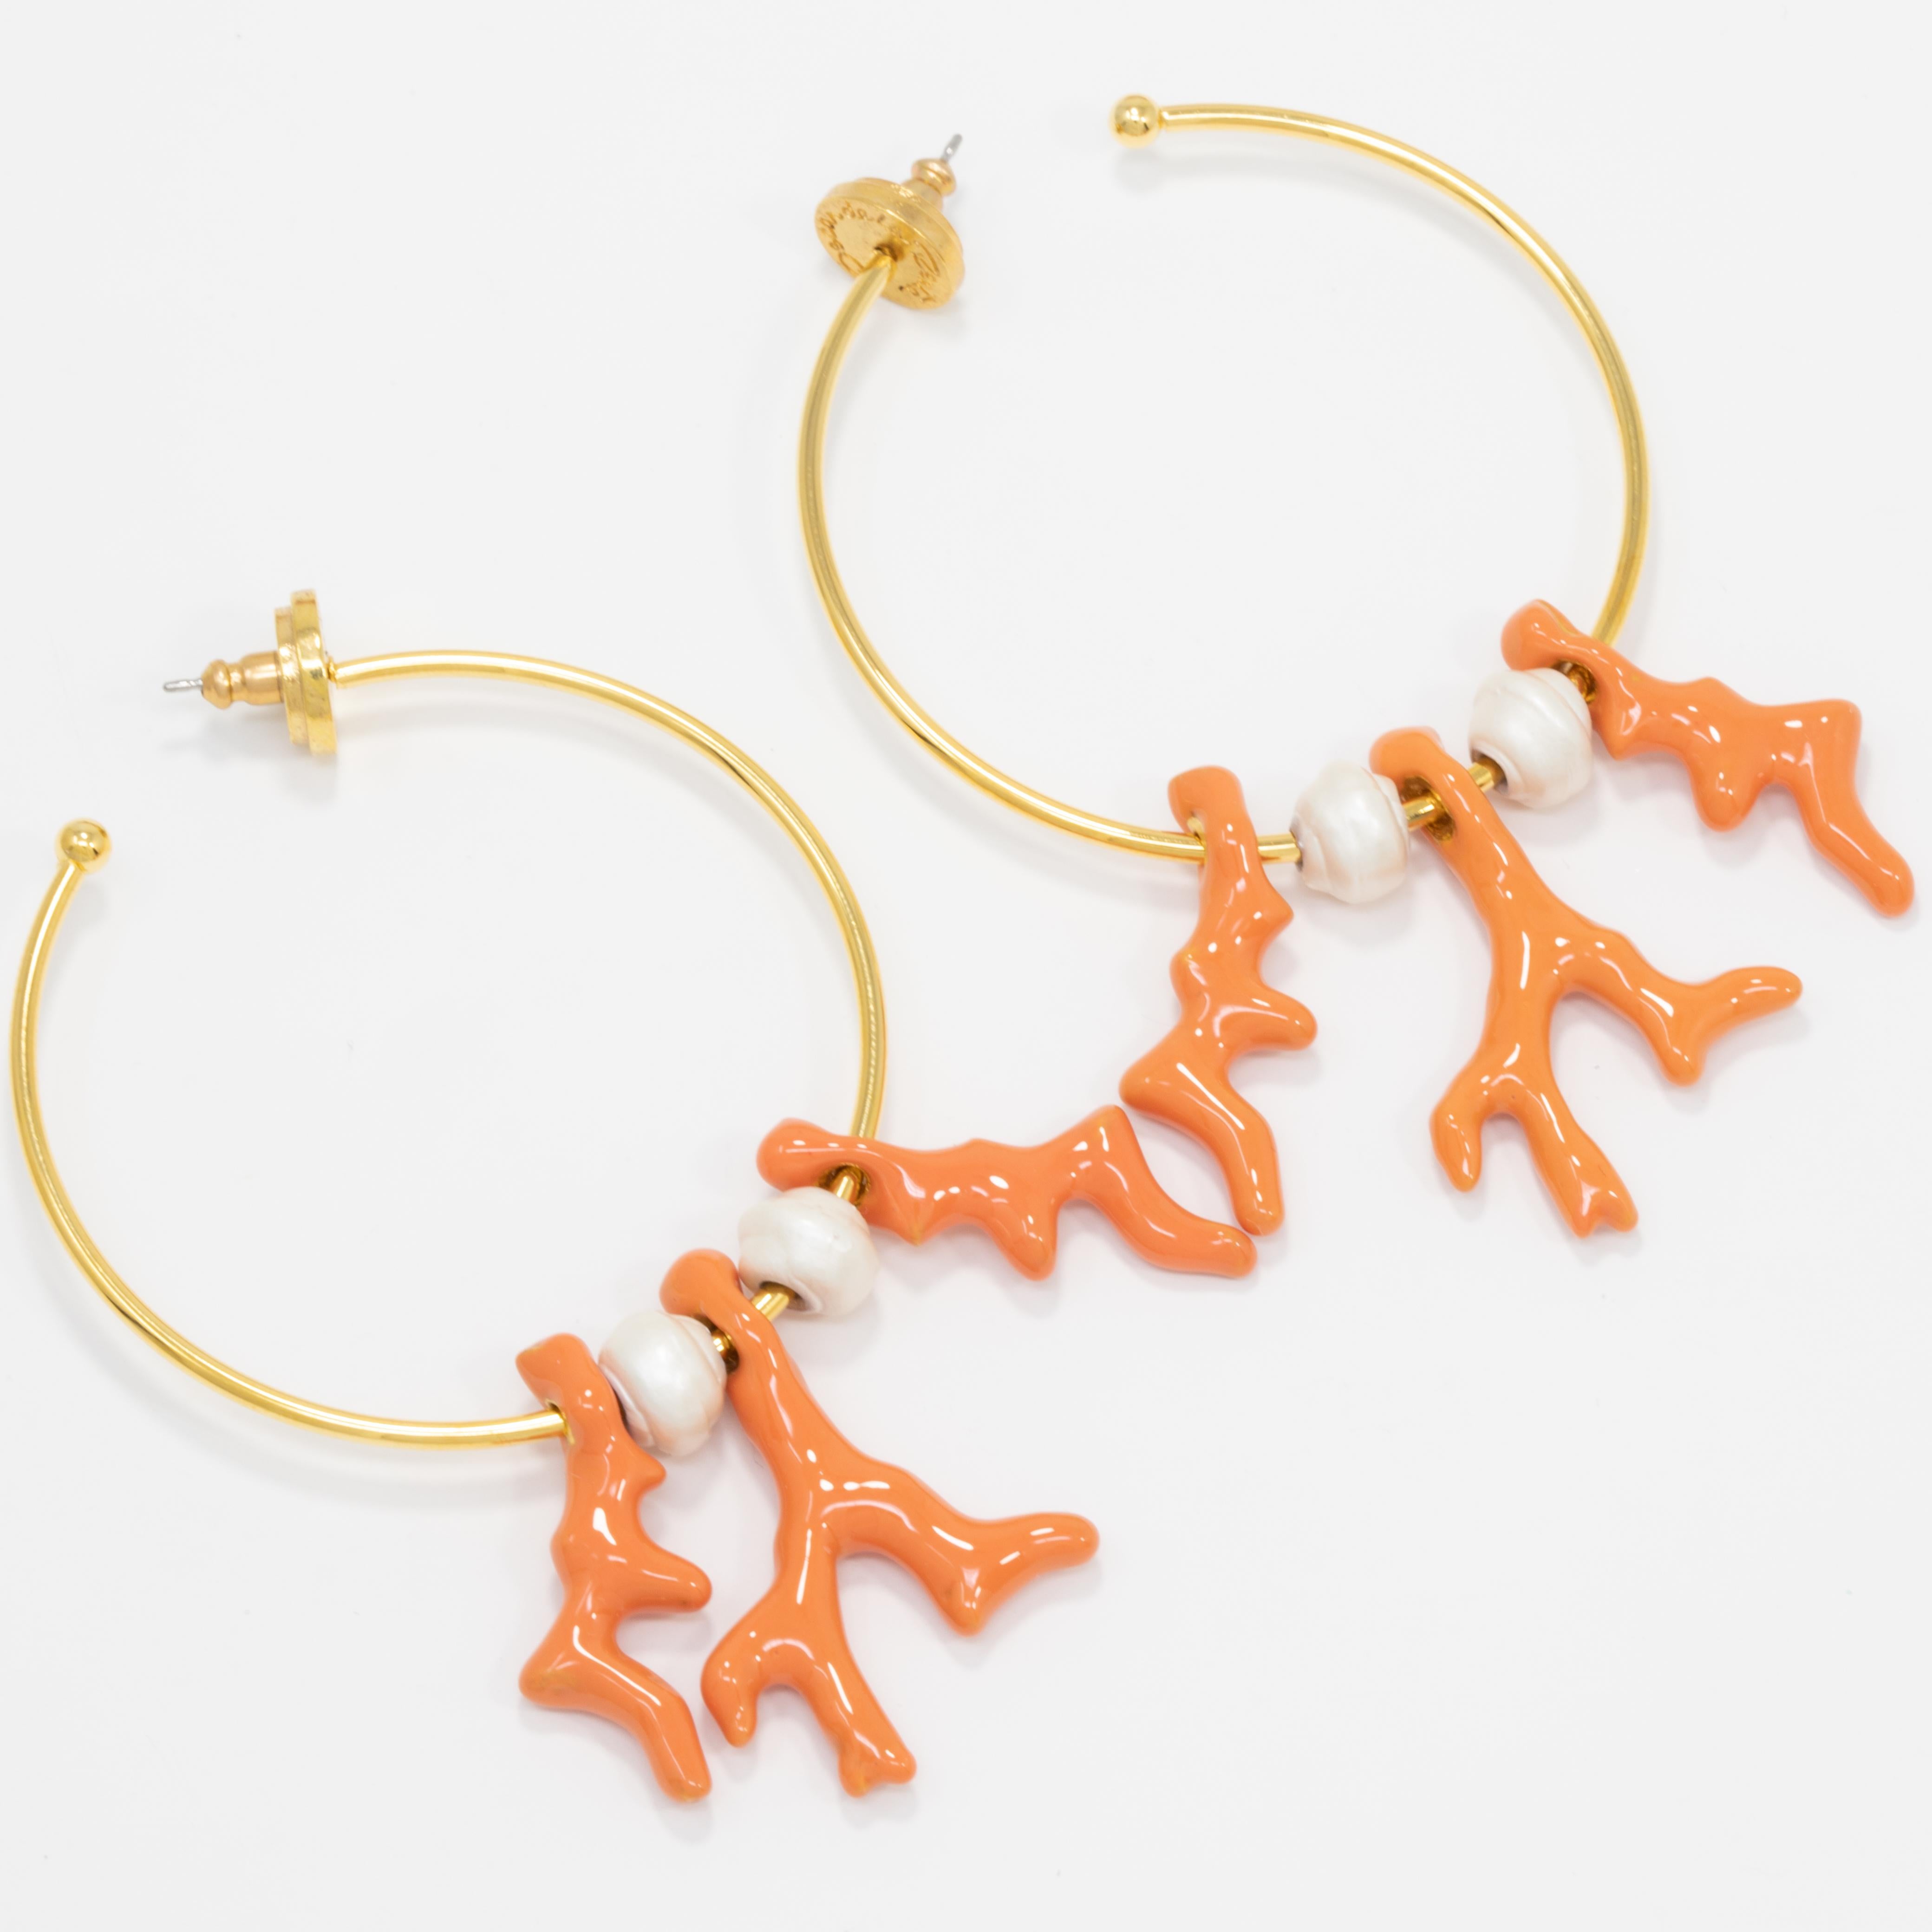 Ein Paar Reif-Ohrringe von Oscar de la Renta mit baumelnden, emaillierten Korallen und Kunstperlen. Verleihen Sie Ihrem Outfit einen goldenen Schimmer!

Vergoldet.

Markenzeichen: Oscar de la Renta, Hergestellt in den USA